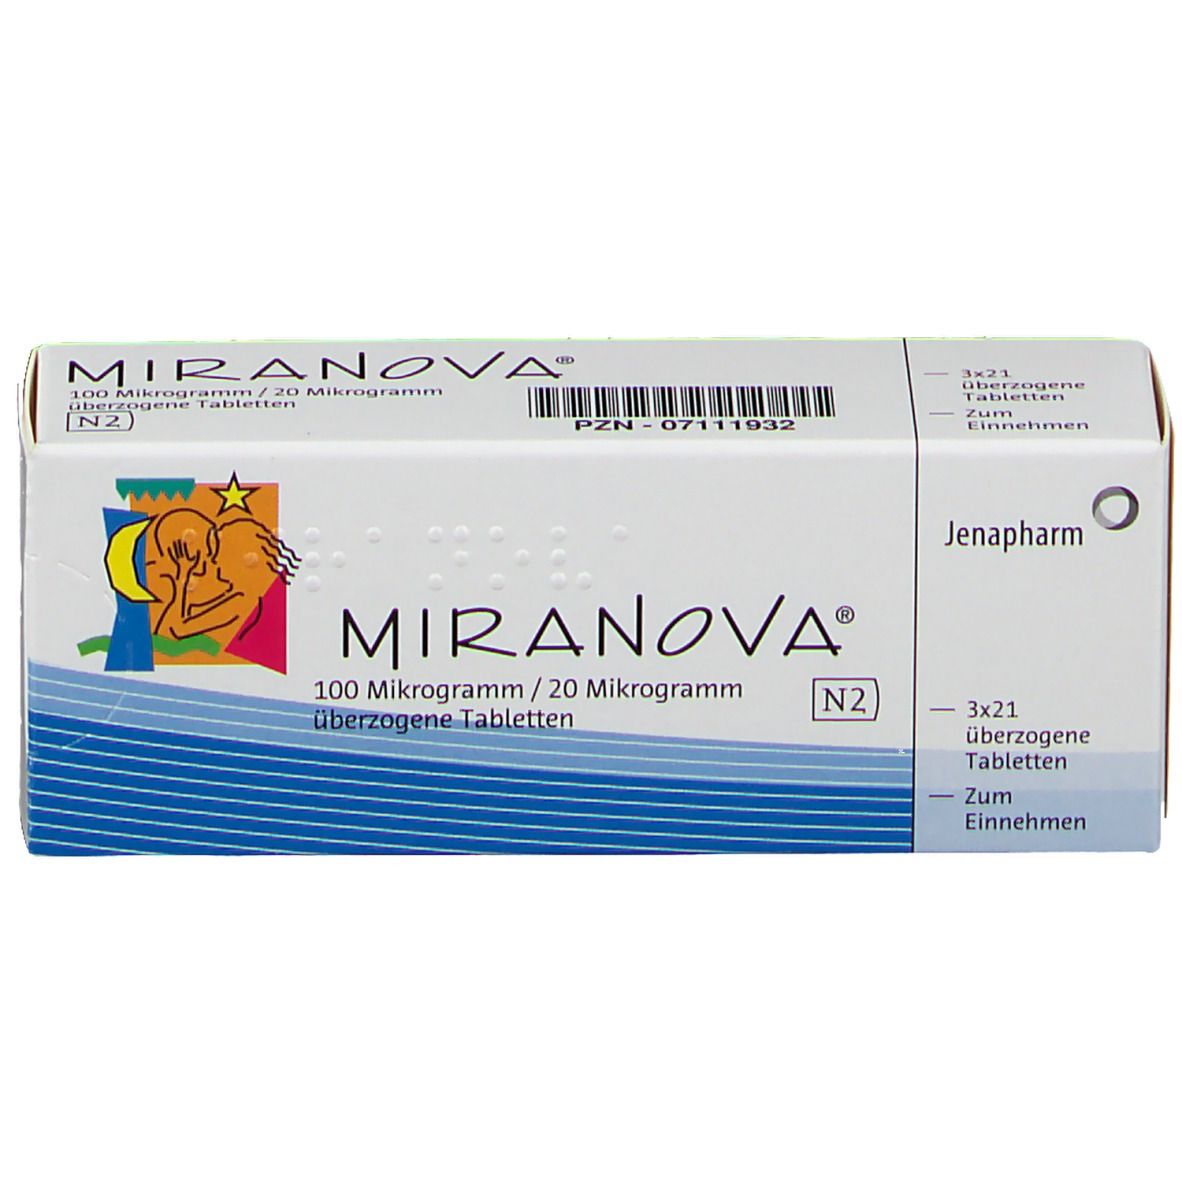 MIRANOVA® 100 µg/20 µg